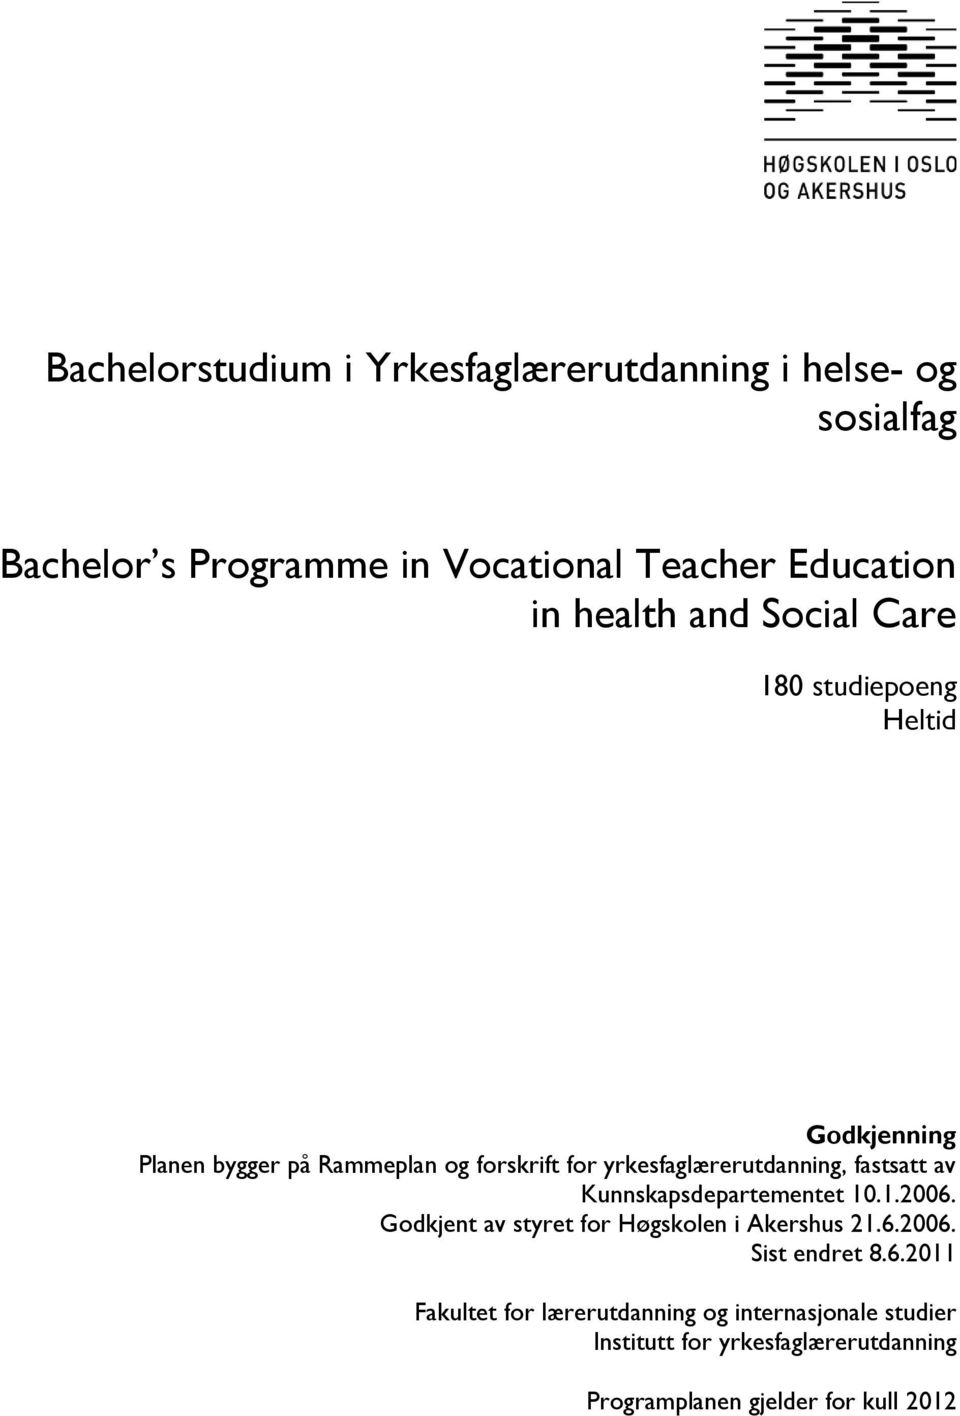 yrkesfaglærerutdanning, fastsatt av Kunnskapsdepartementet 10.1.2006. Godkjent av styret for Høgskolen i Akershus 21.6.2006. Sist endret 8.